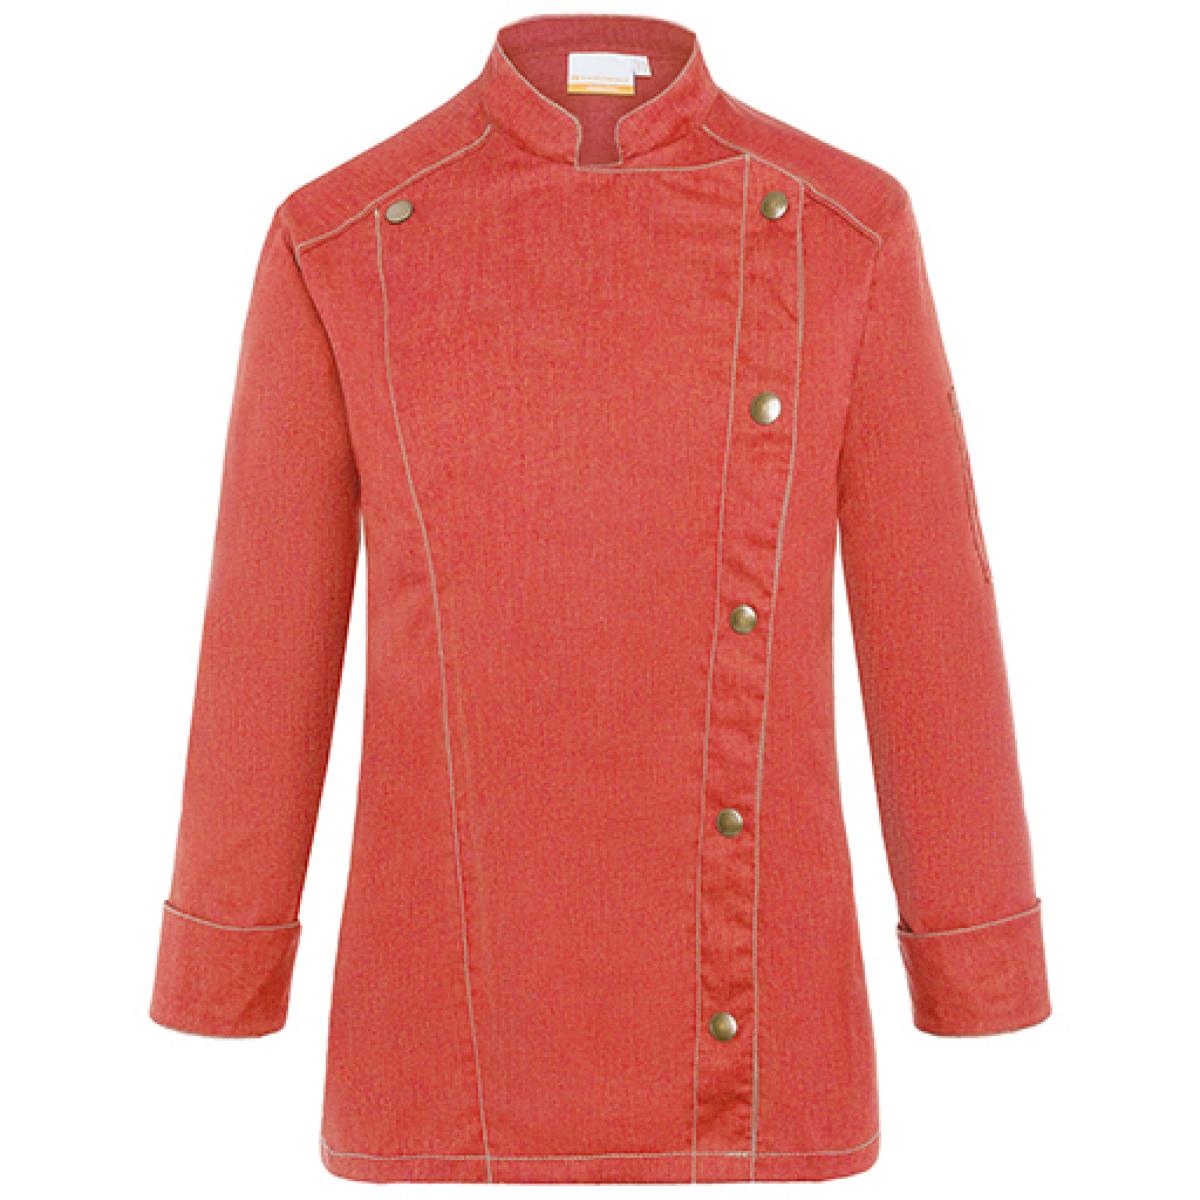 Hersteller: Karlowsky Herstellernummer: JF 20 Artikelbezeichnung: Damen Kochjacke Jeans-Style Industriewäschetauglich Farbe: Vintage Red (ca. Pantone 710C)